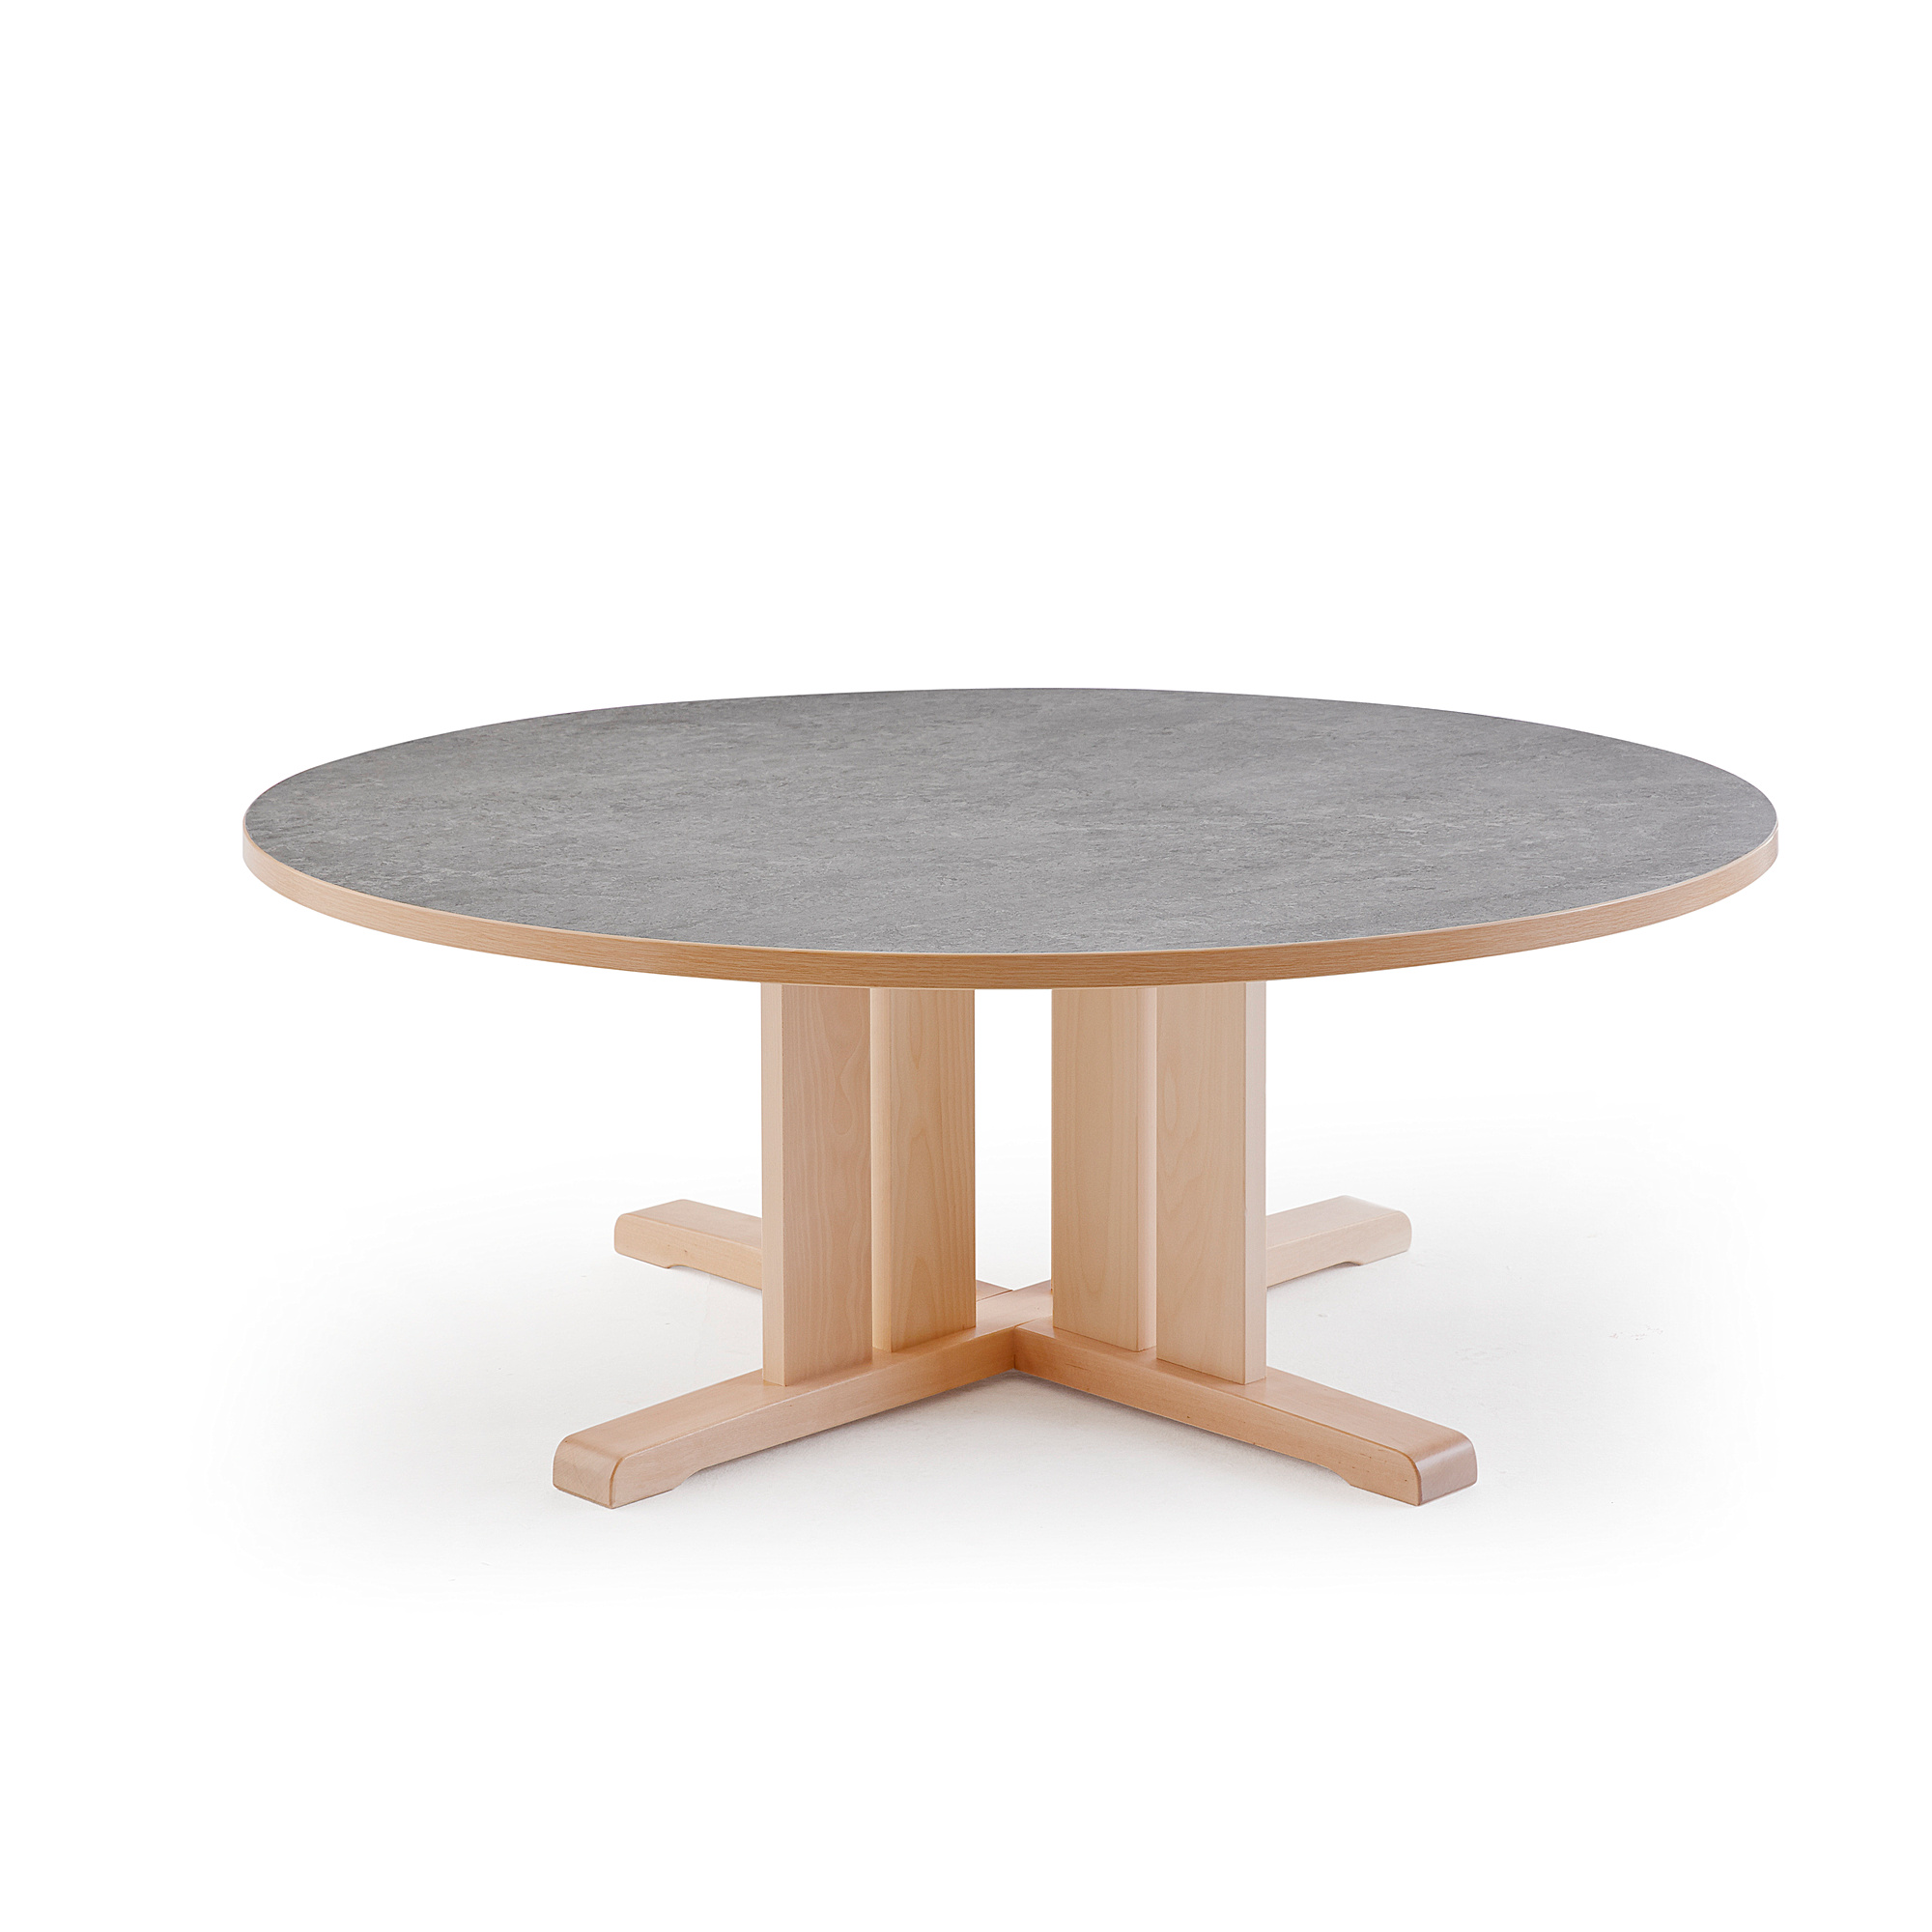 Stůl KUPOL, Ø1200x500 mm, akustické linoleum, bříza/šedá